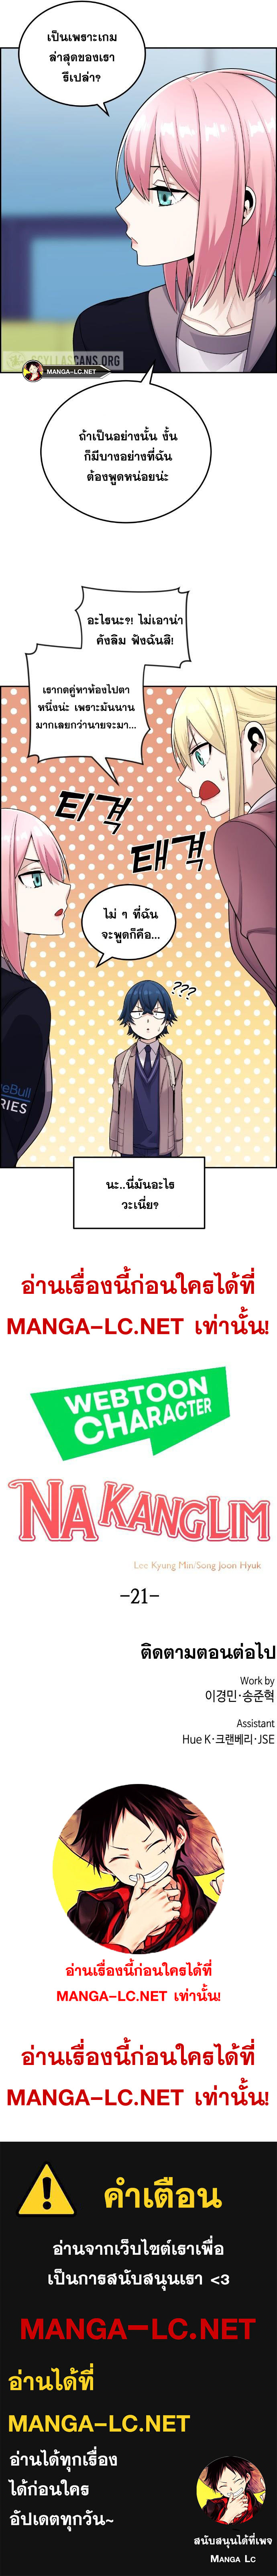 Webtoon Character Na Kang Lim à¸•à¸­à¸™à¸—à¸µà¹ˆ 21 (11)